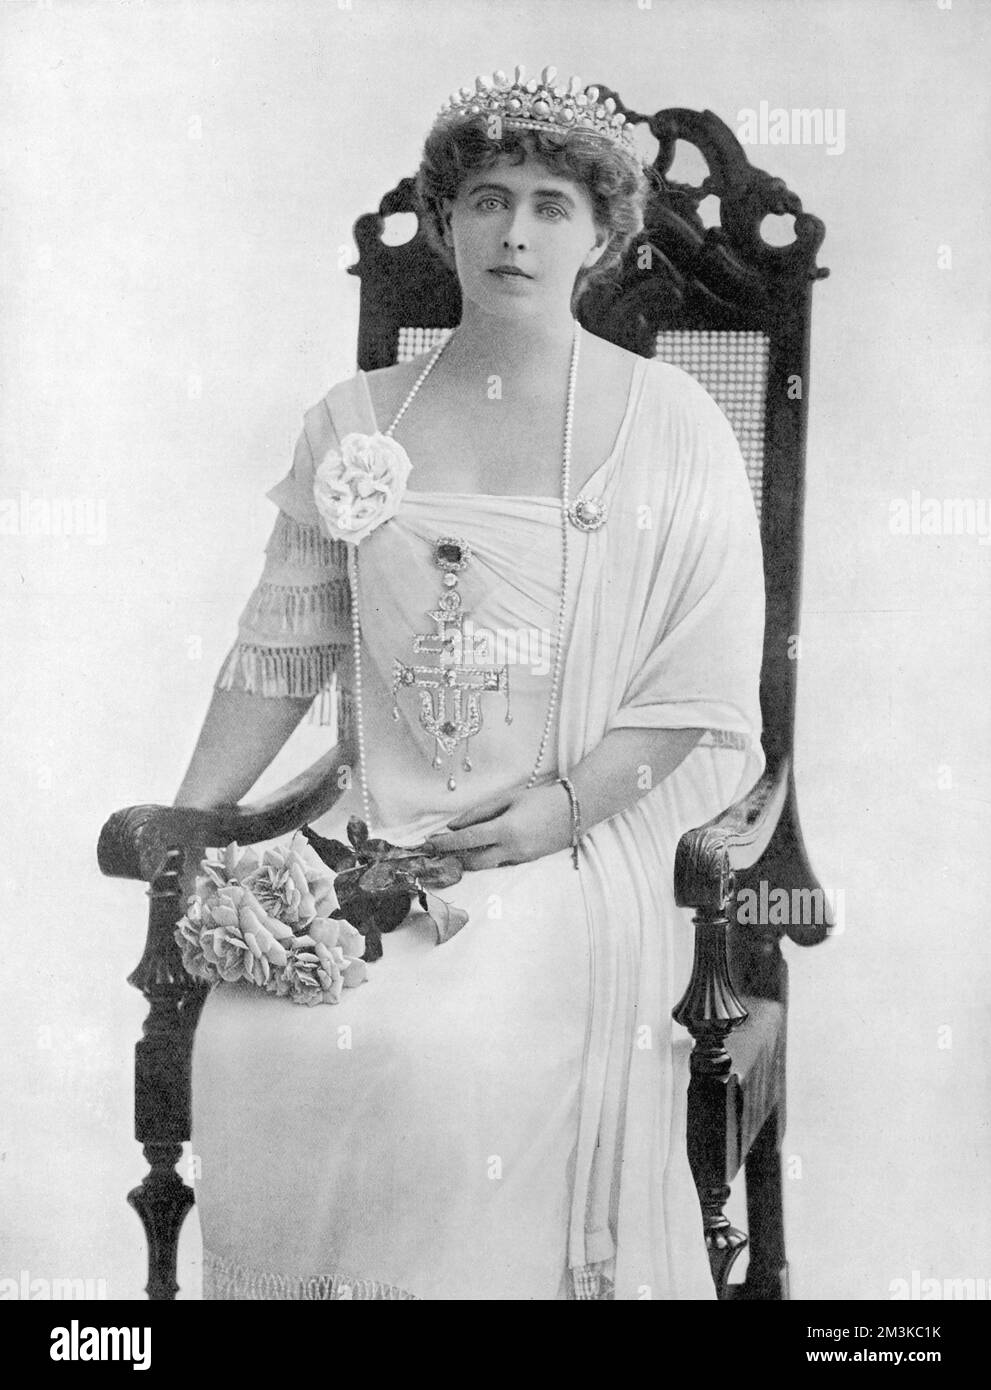 Marie Alexandra Victoria, un membro della famiglia reale britannica, sposò il re Ferdinando i di Romania, diventando la regina consorte di Romania. Data: 1875-1938 Foto Stock